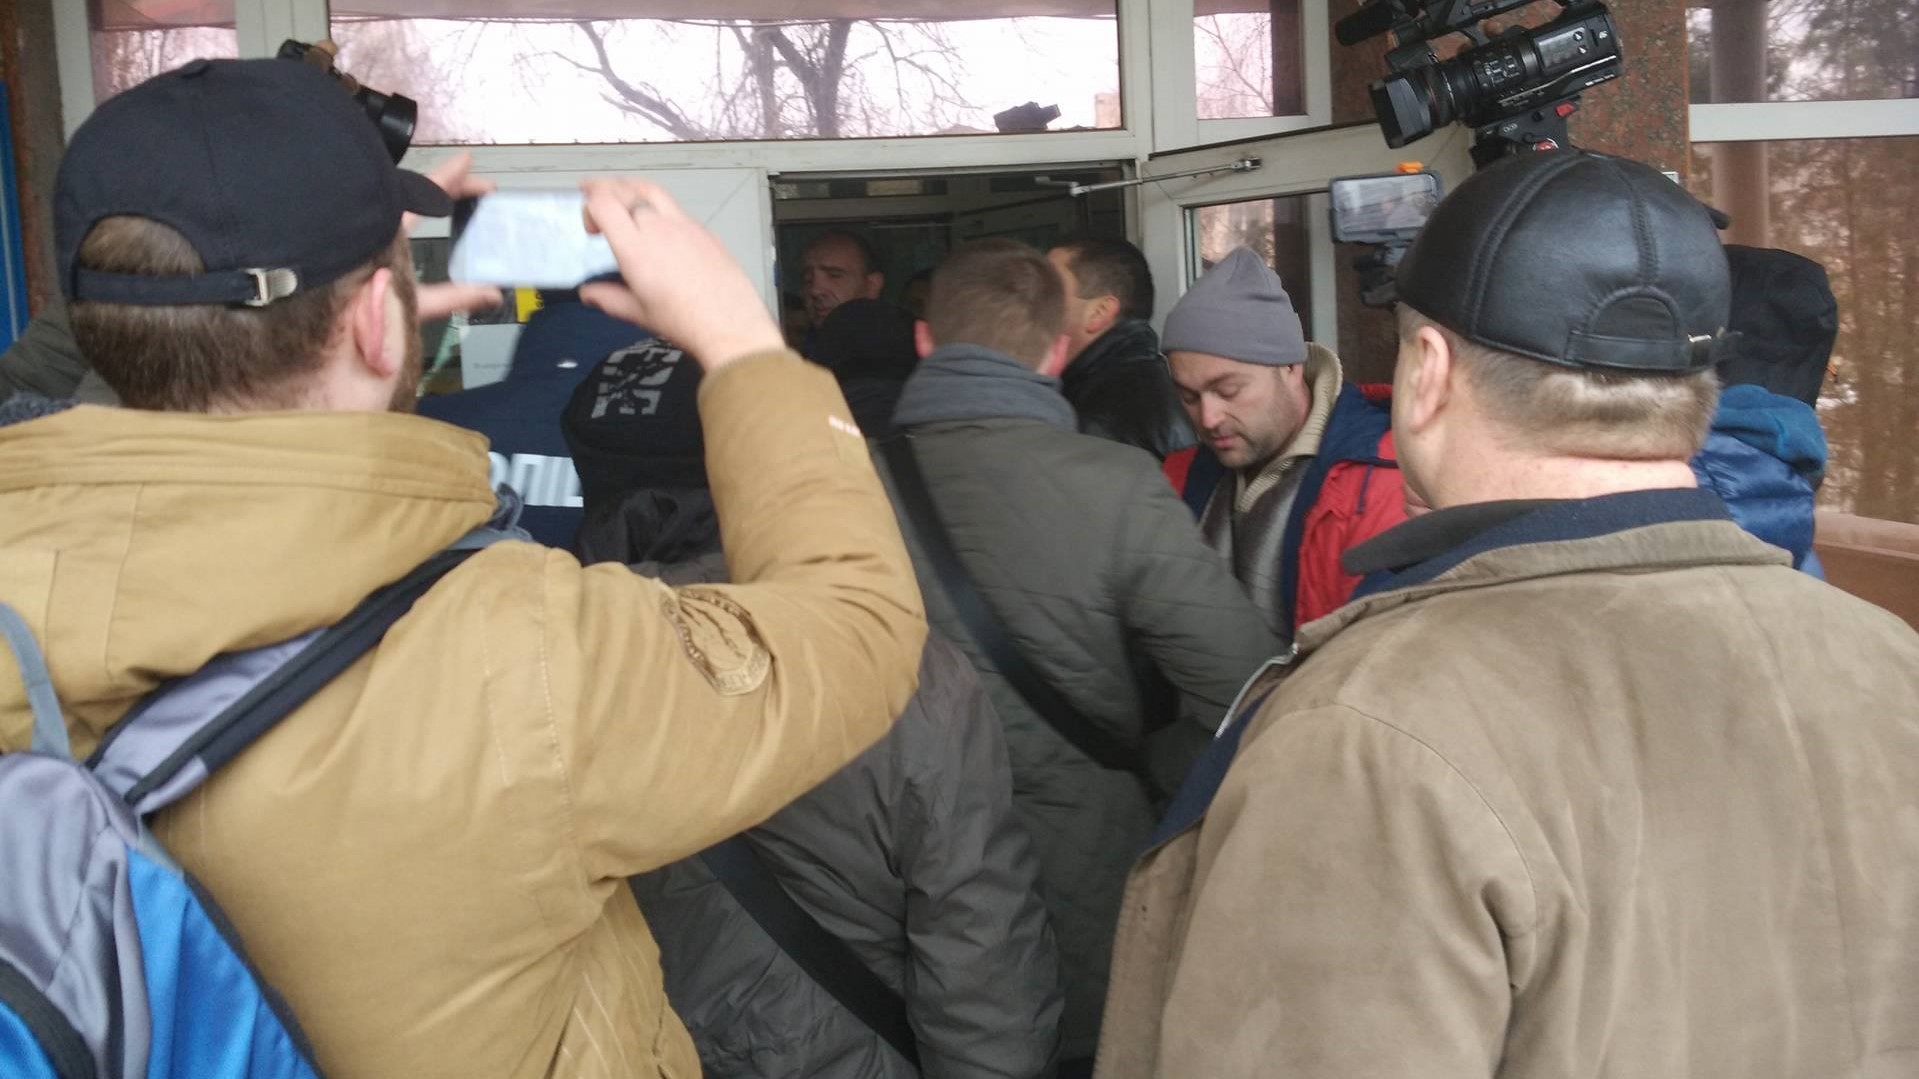 Активісти прорвалися в «Кіровоградгаз». ФОТО, ВІДЕО